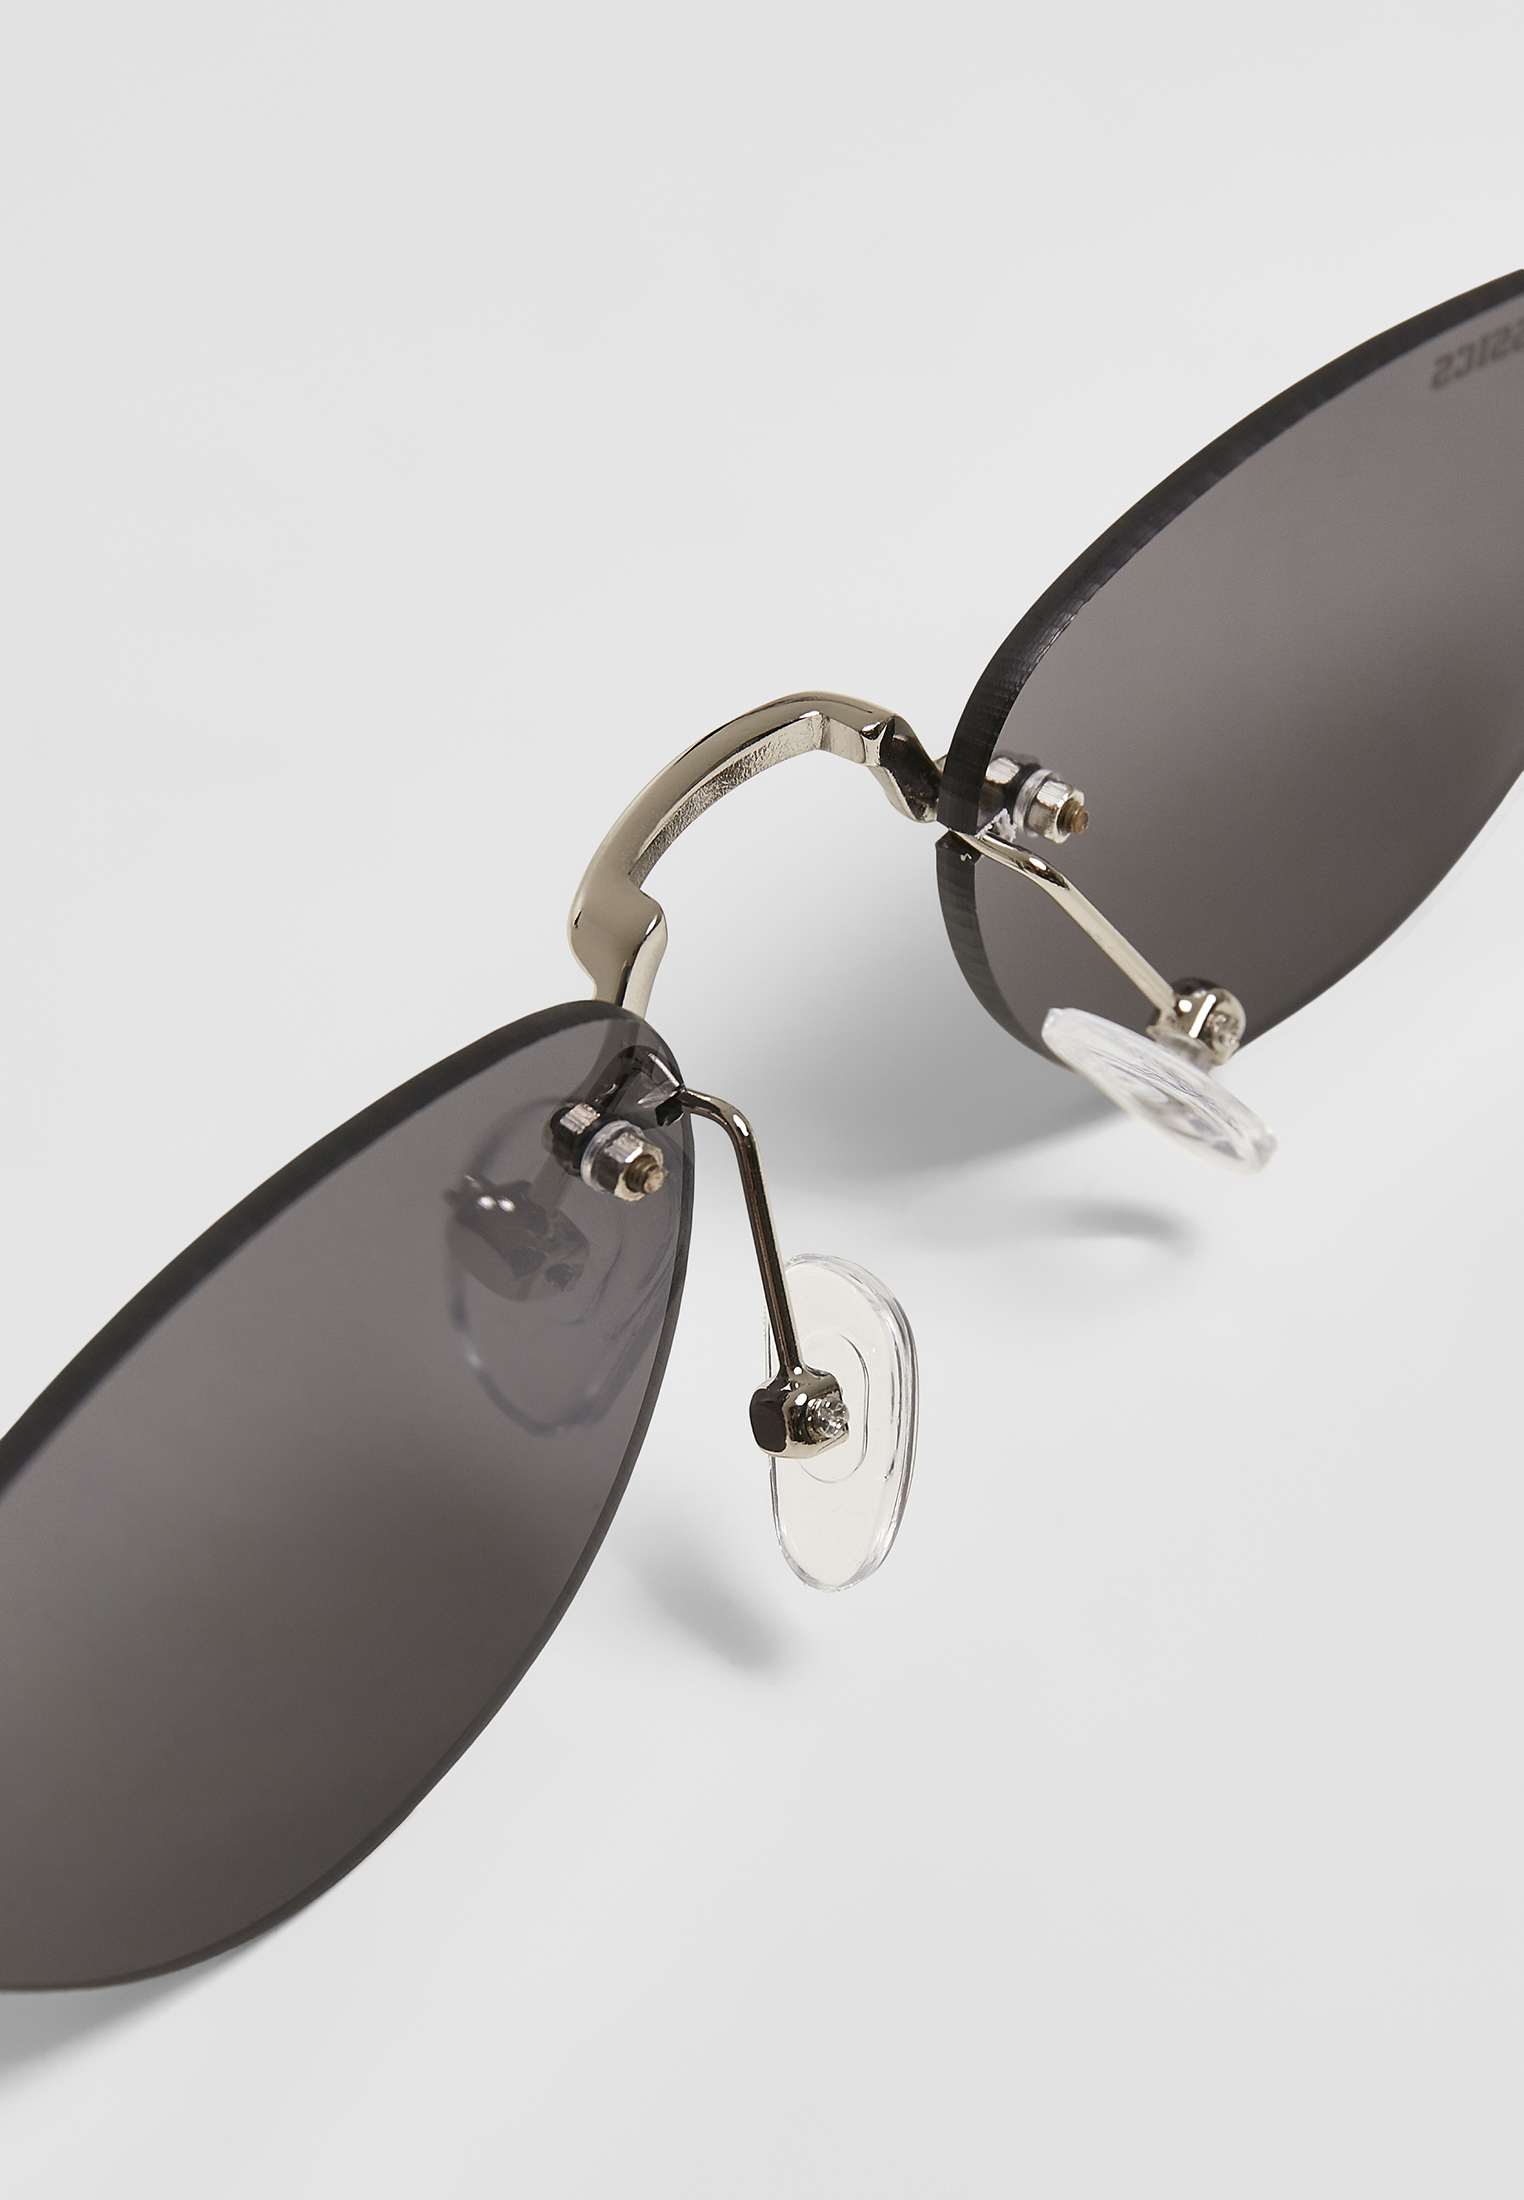 Sonnenbrillen Sunglasses Manhatten 2-Pack in Farbe silver/black+gold/orange